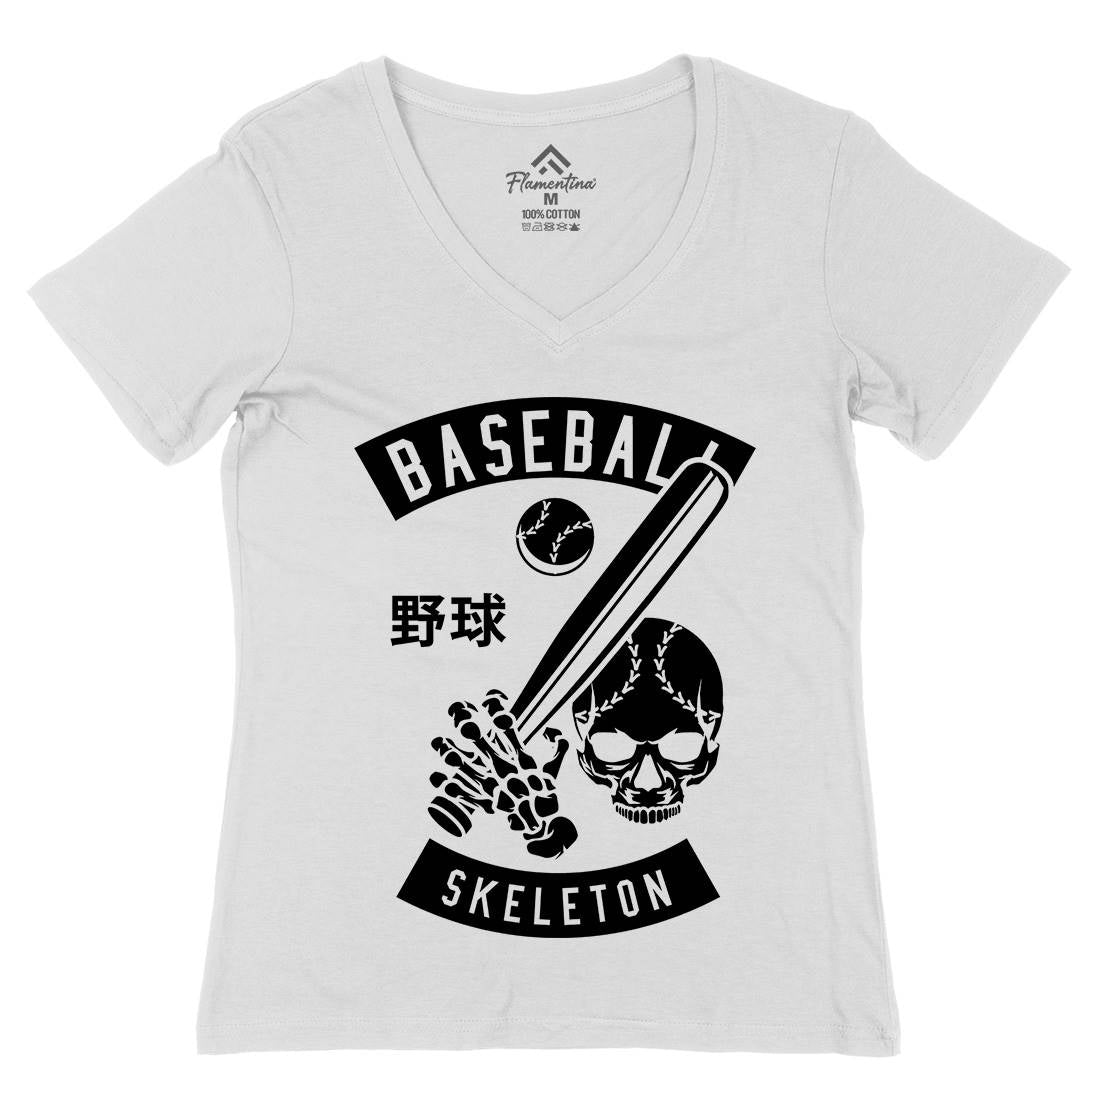 Baseball Skeleton Womens Organic V-Neck T-Shirt Sport B489